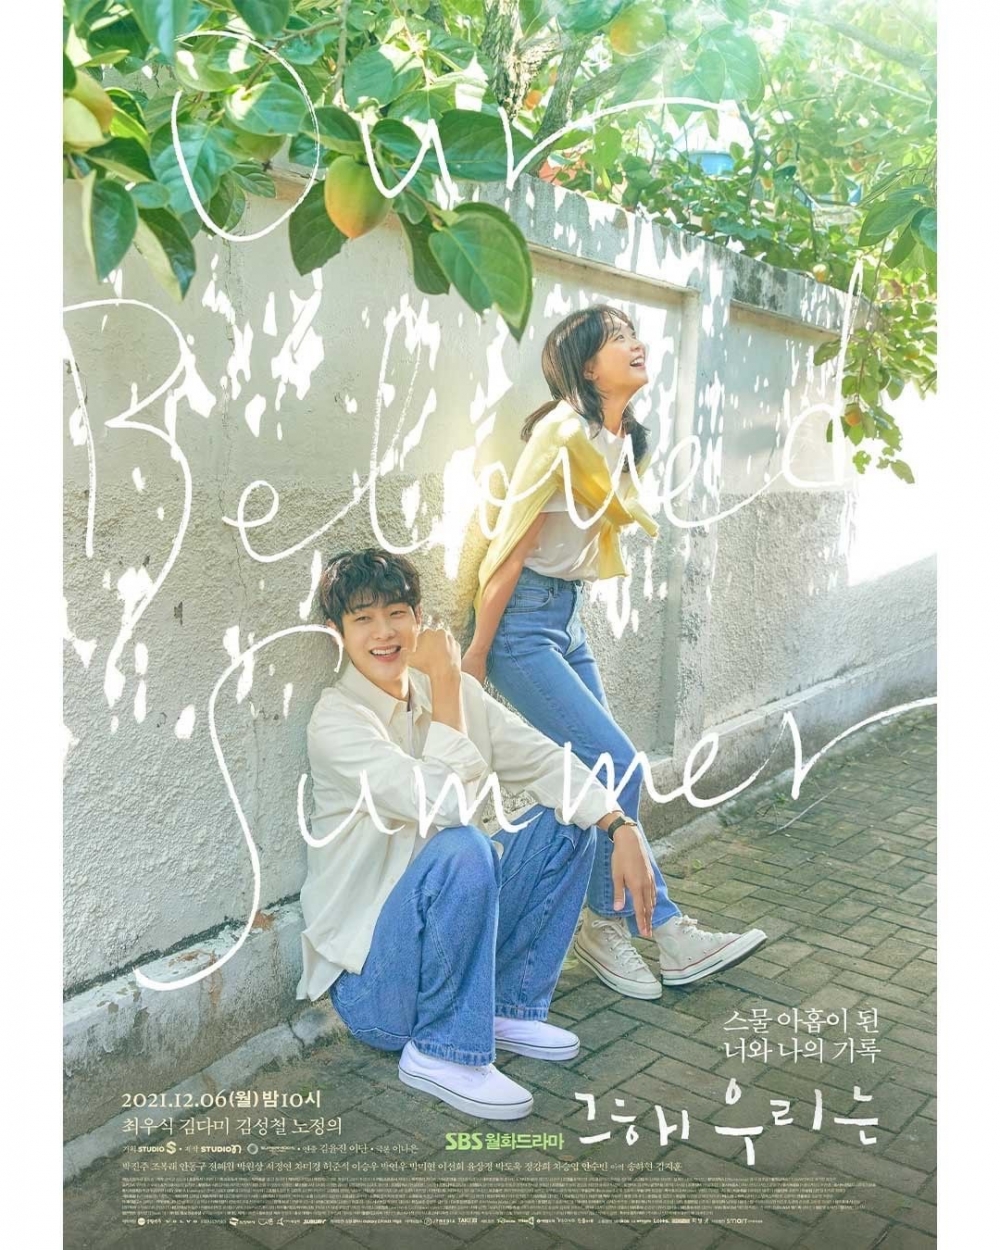 韓劇《那年，我們》講述已分手10年的戀人再度相見的故事